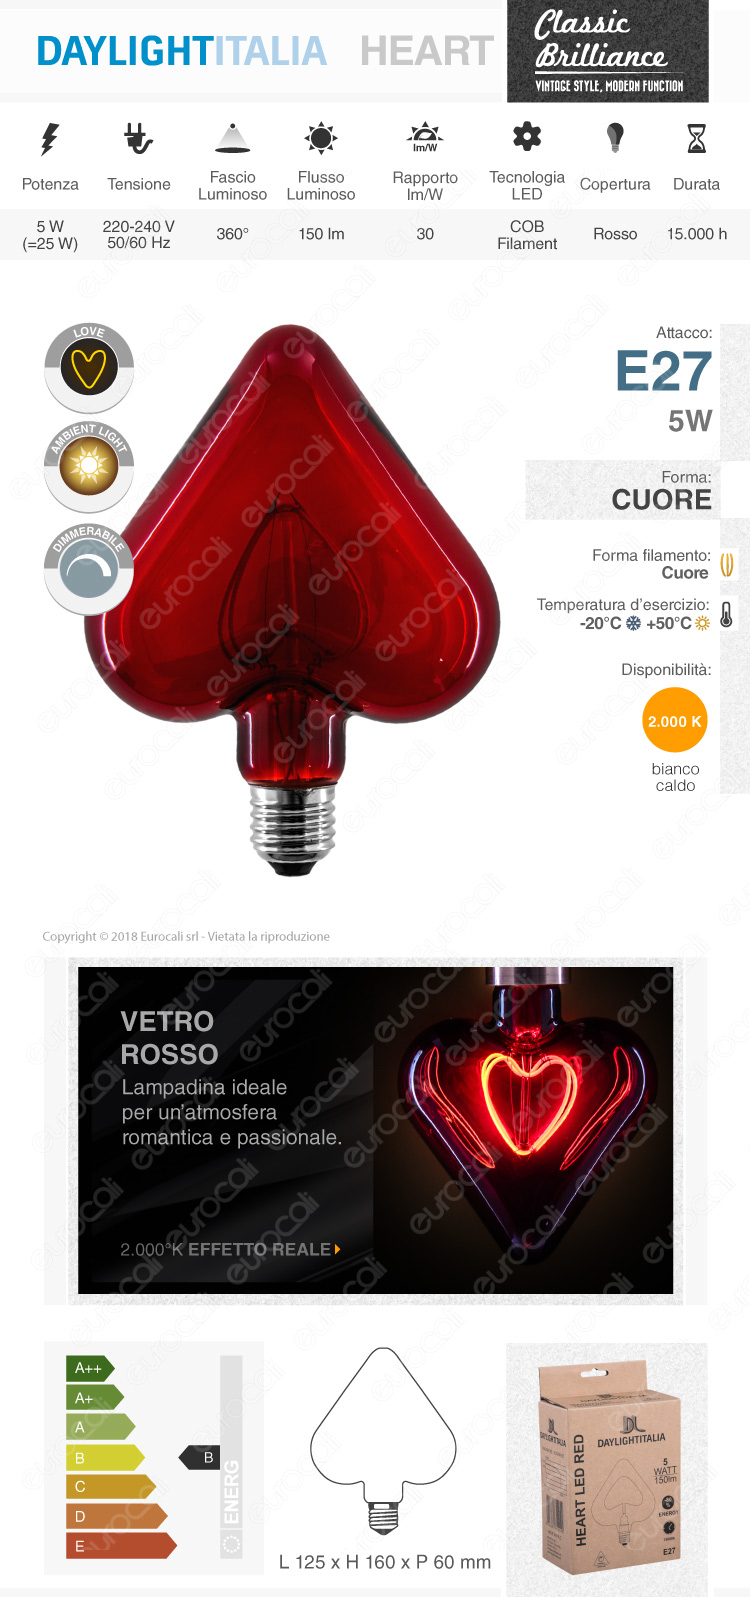 Daylight Lampadina E27 Filamento LED a Doppio Arco 5W Forma Cuore con Vetro Rosso Dimmerabile - mod. 700183.0DA